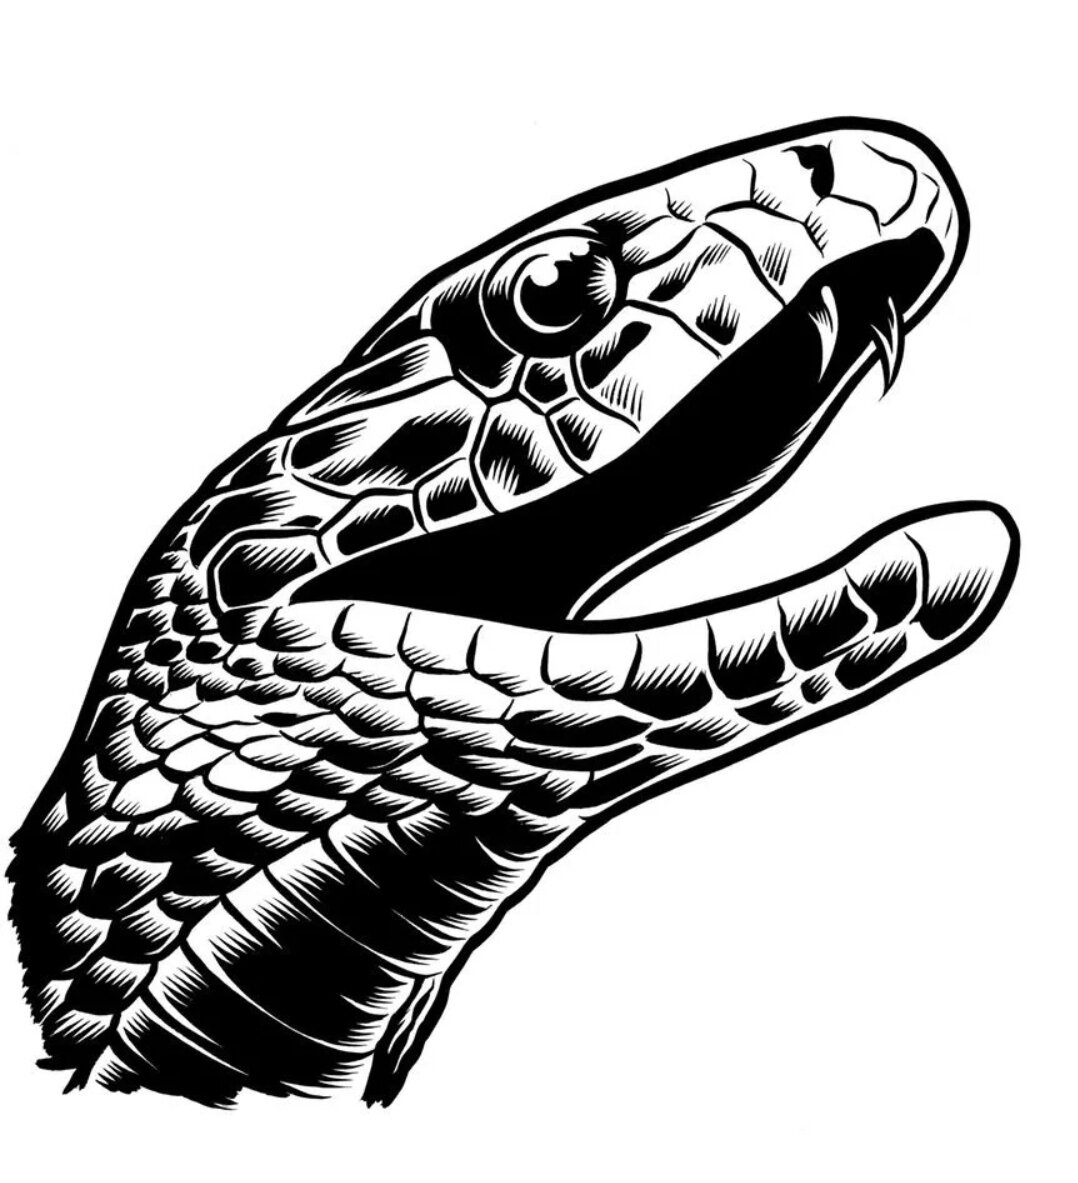 Голова змеи тату эскиз | Эскизы татуировок, Эскиз, Мастер тату